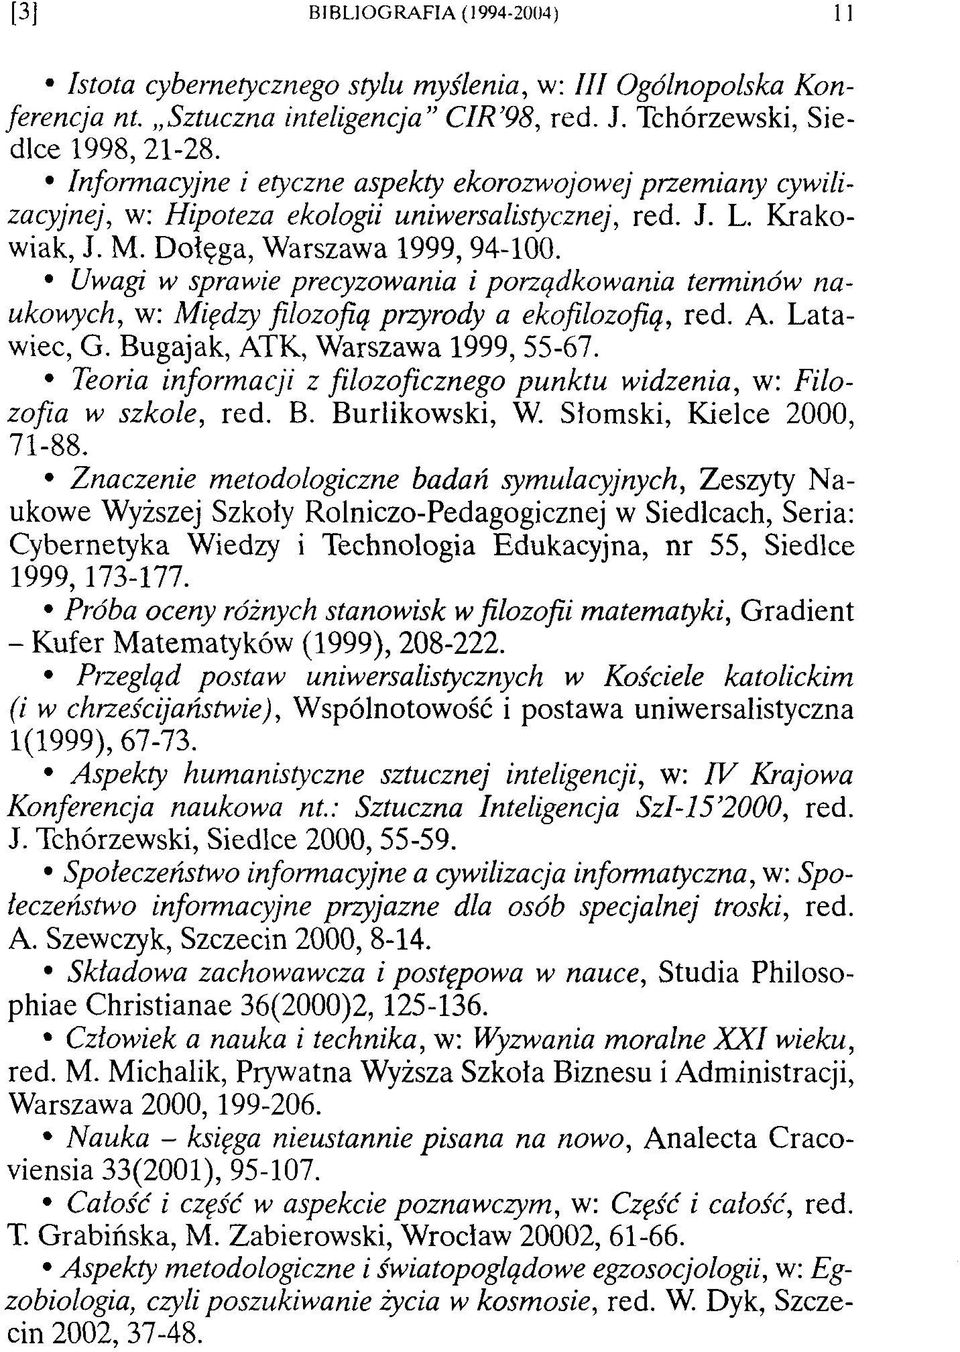 Uwagi w sprawie precyzowania i porządkowania terminów naukowych, w: Między filozofią przyrody a ekofilozofią, red. A. L atawiec, G. Bugajak, ATK, Warszawa 1999, 55-67.